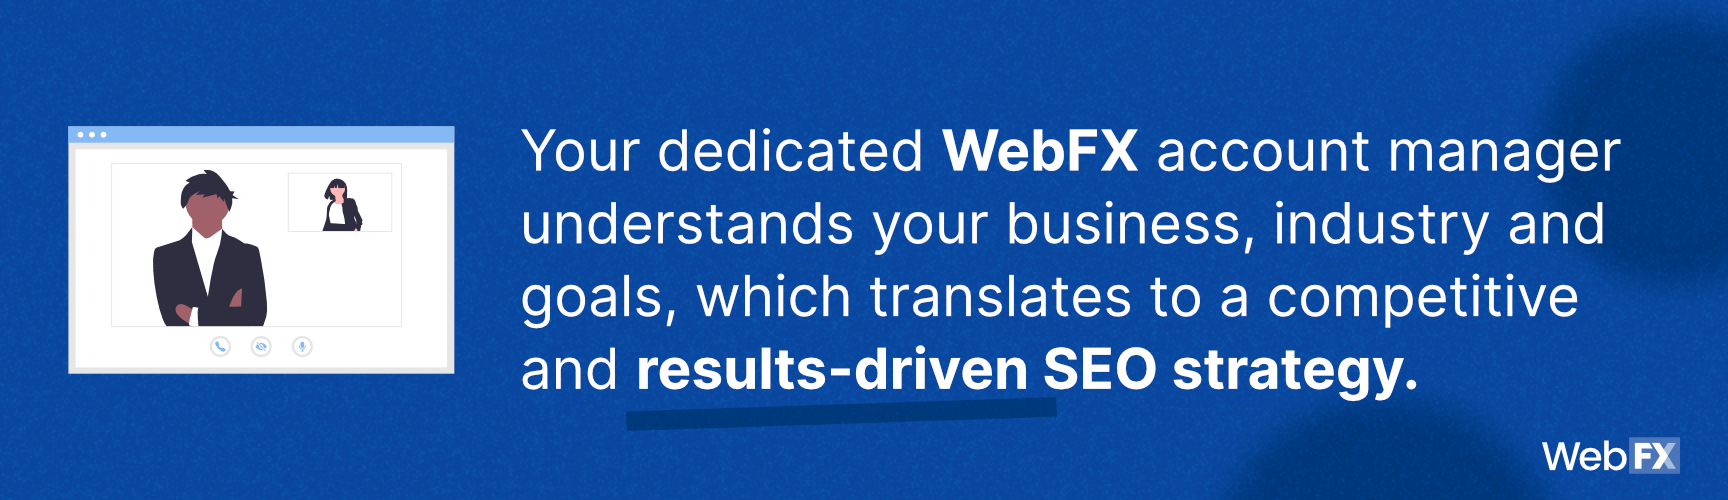 WebFX了解你的业务，行业和目标，这是它是最好的SEO公司的原因之一